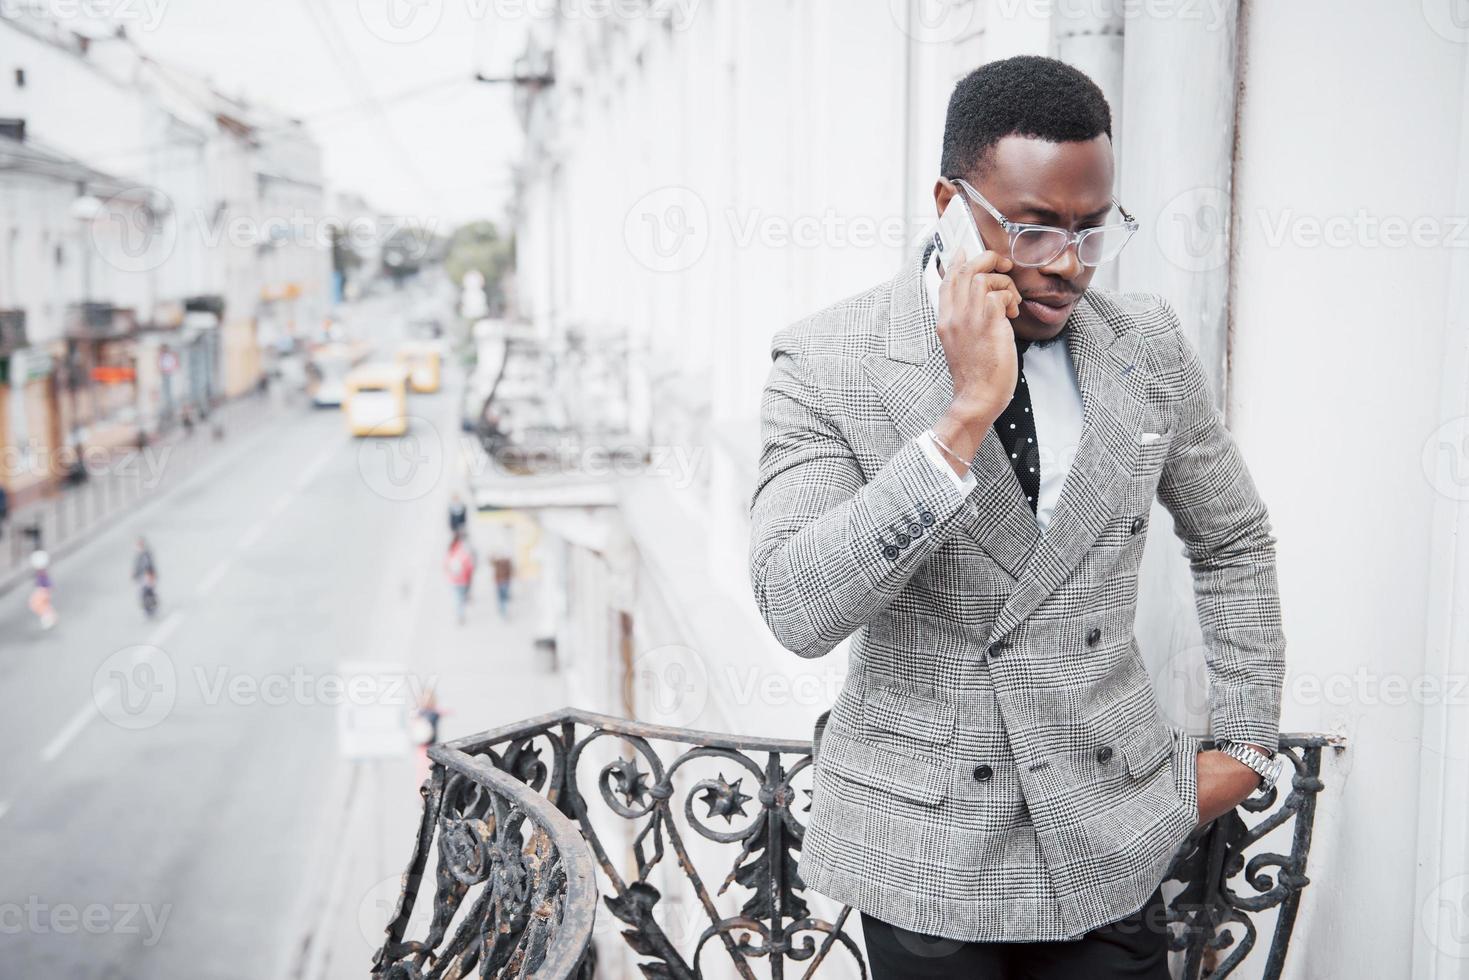 jonge afrikaanse man in formele kleding die op de mobiele telefoon praat en glimlacht terwijl hij buiten staat foto